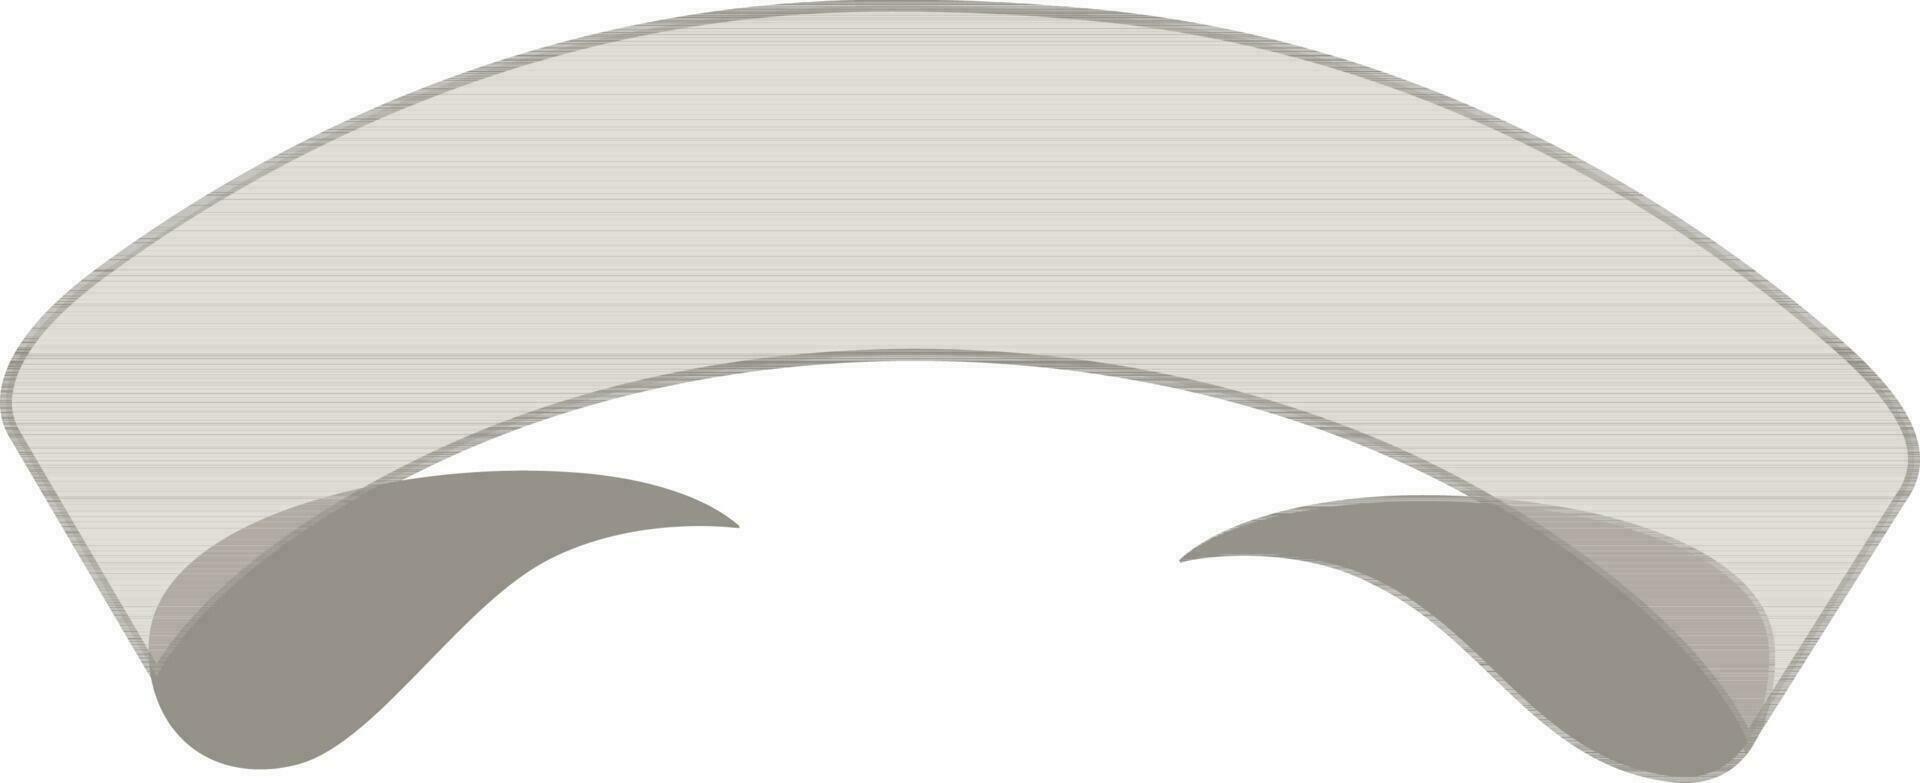 illustration de gris Couleur ruban bannière. vecteur